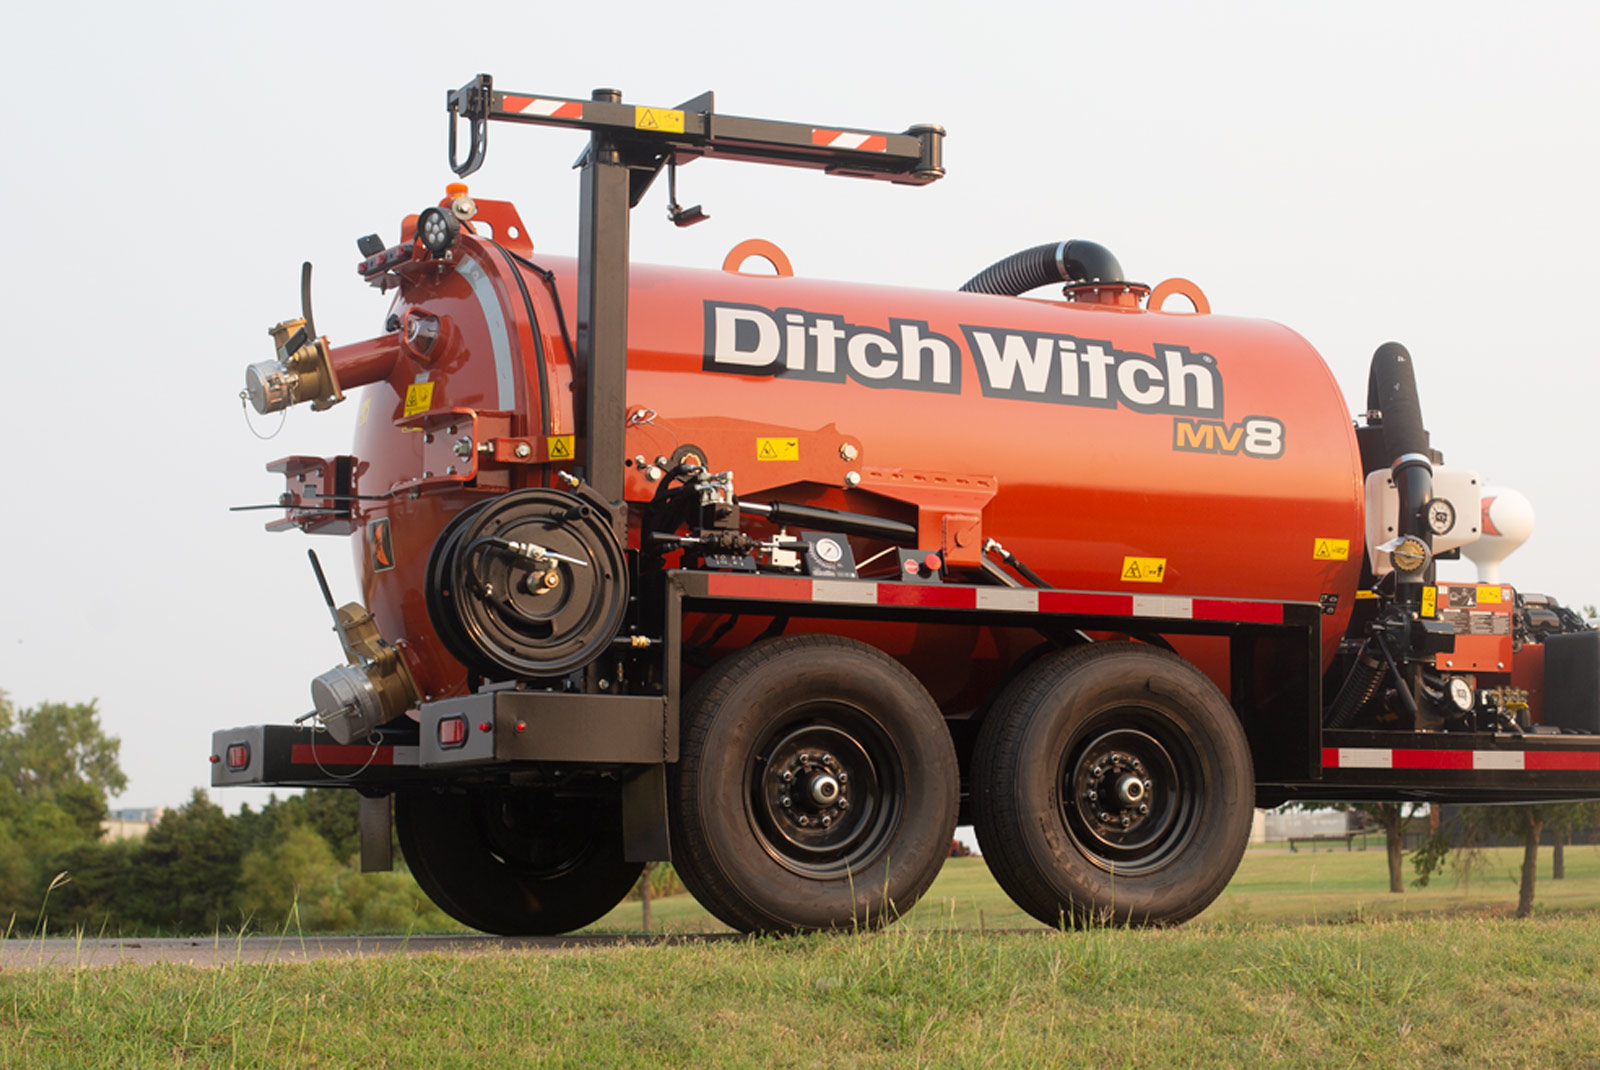 MV8 Ditch Witch